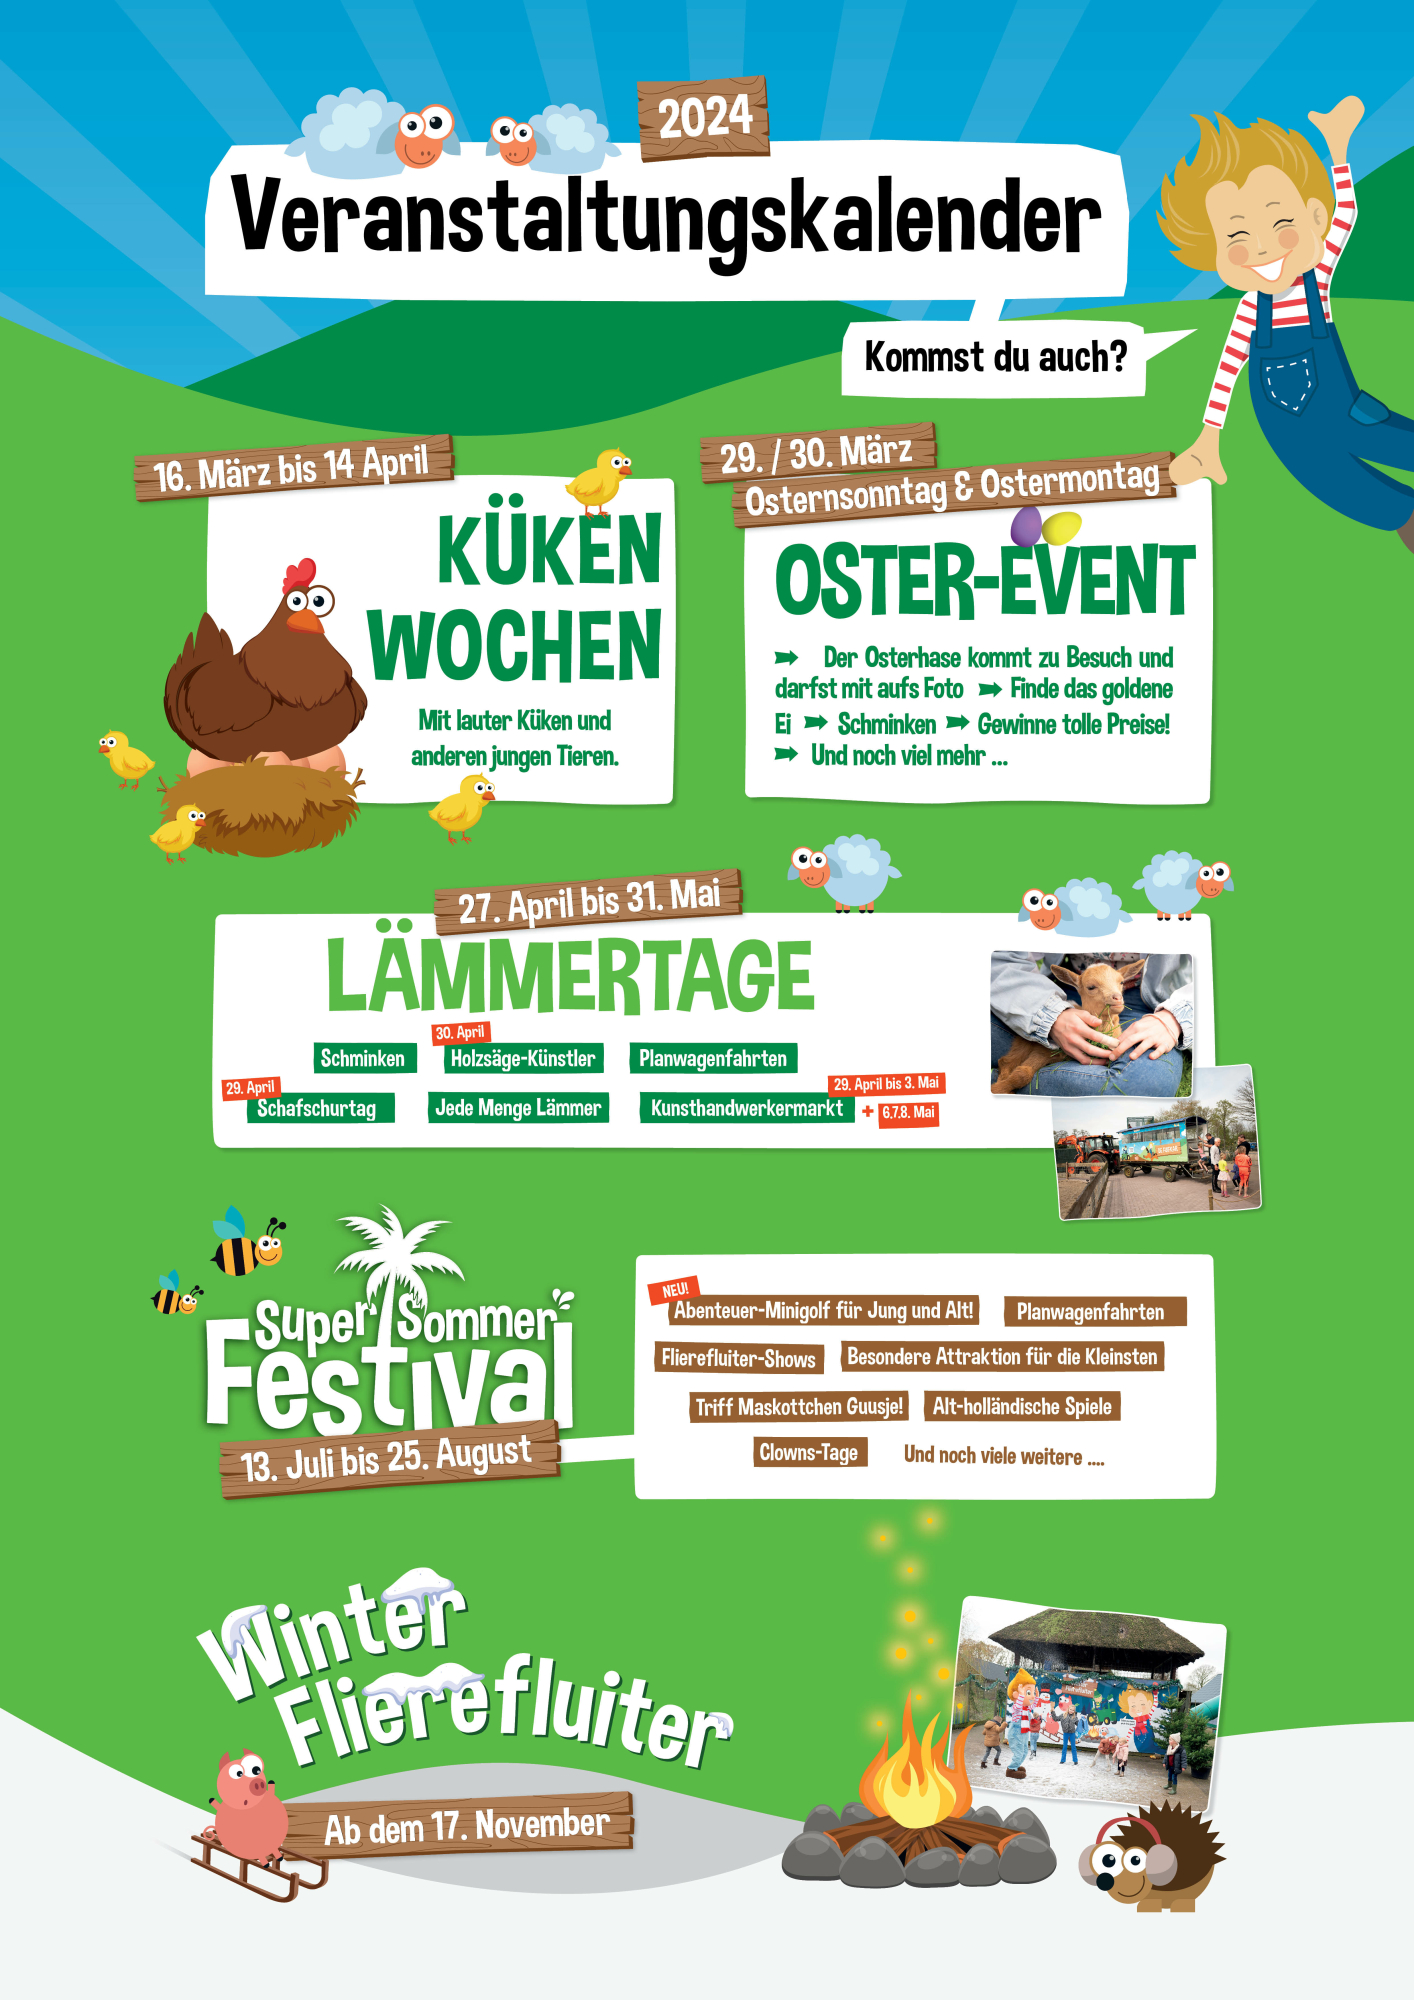 Veranstaltungskalender Bauernhof Flierefluiter im Niederlande